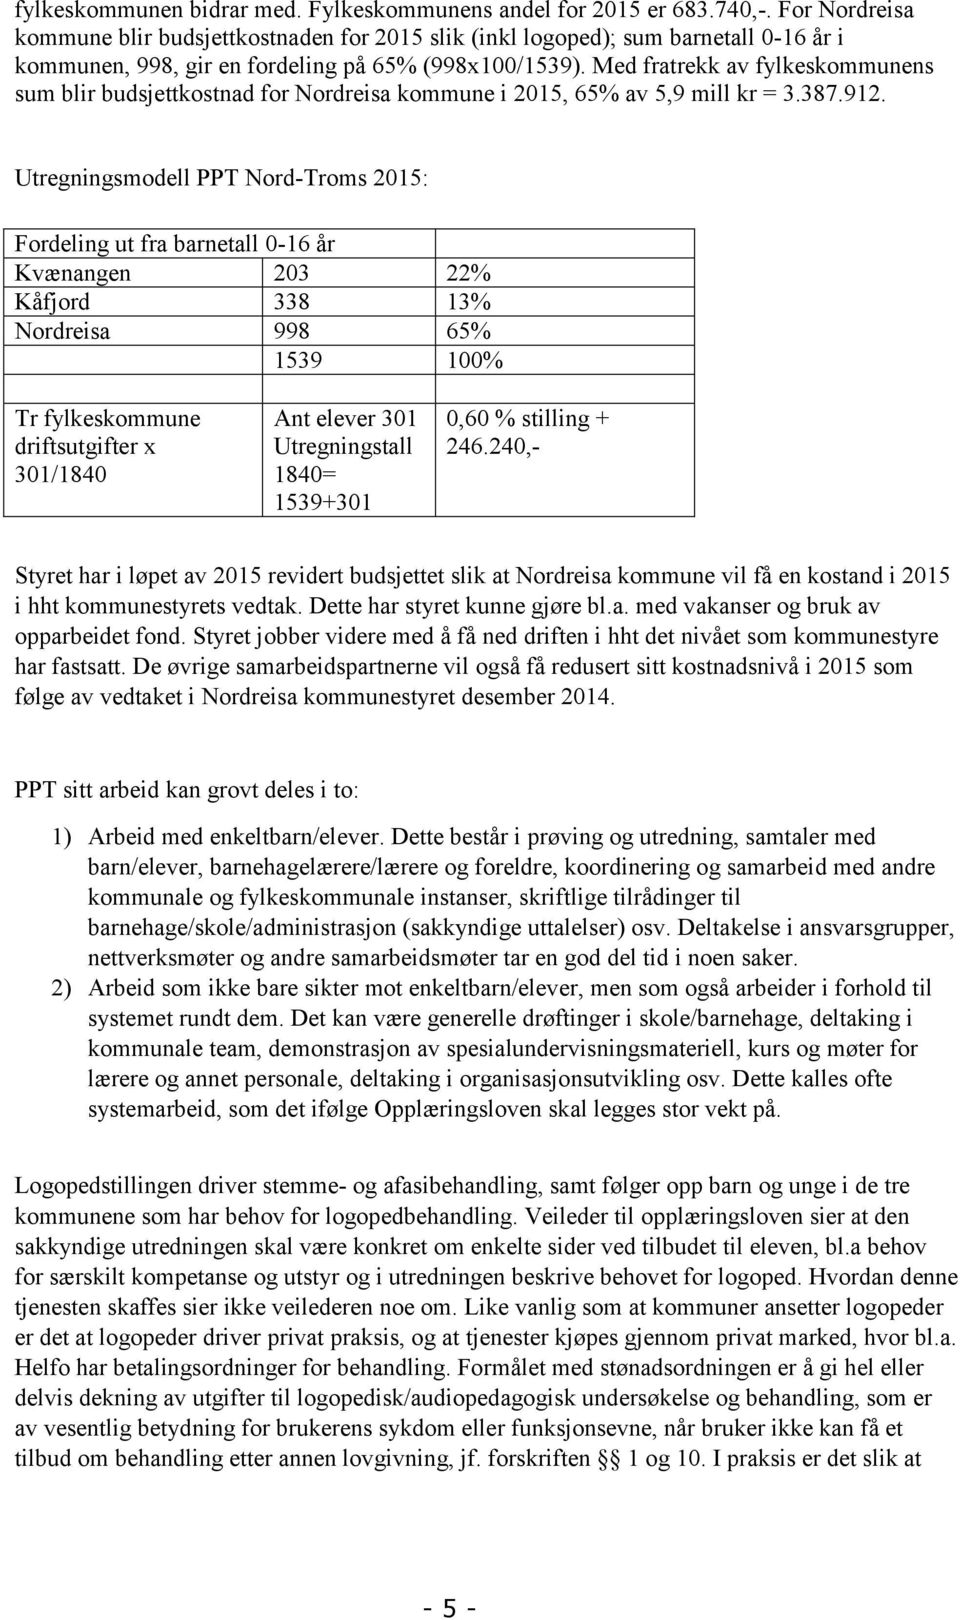 Med fratrekk av fylkeskommunens sum blir budsjettkostnad for Nordreisa kommune i 2015, 65% av 5,9 mill kr = 3.387.912.